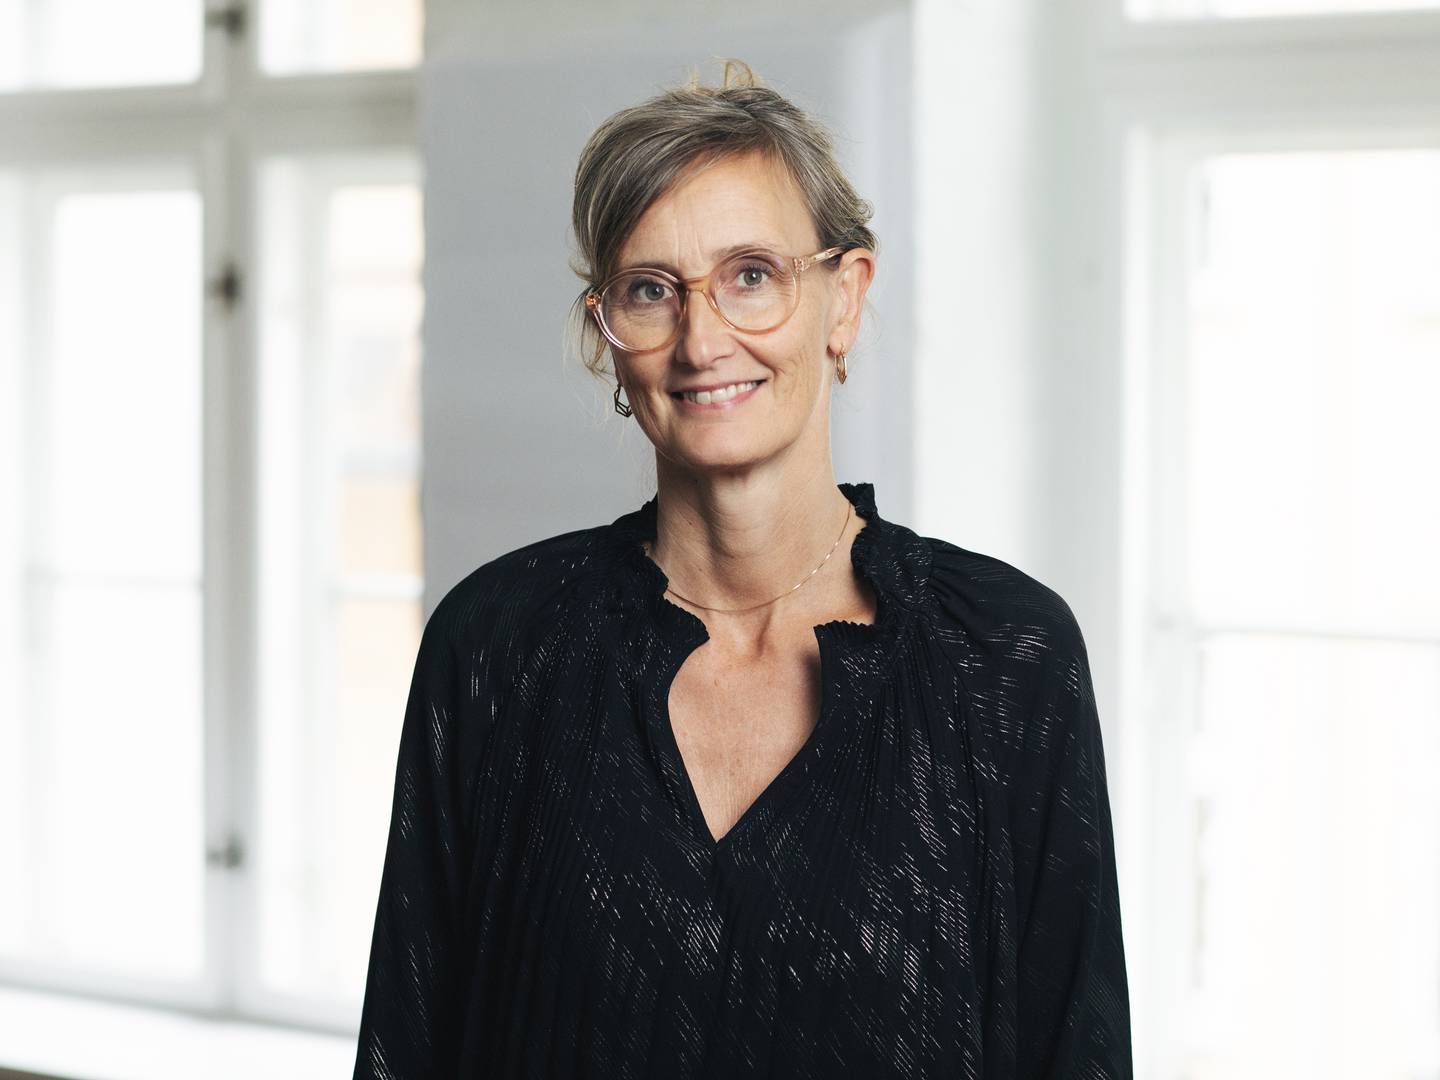 Anette Høyrup er uddannet jurist fra Københavns Universitet i år 2000 og har slået sine folder hos Forbrugerrådet Tænk lige siden. | Foto: PR